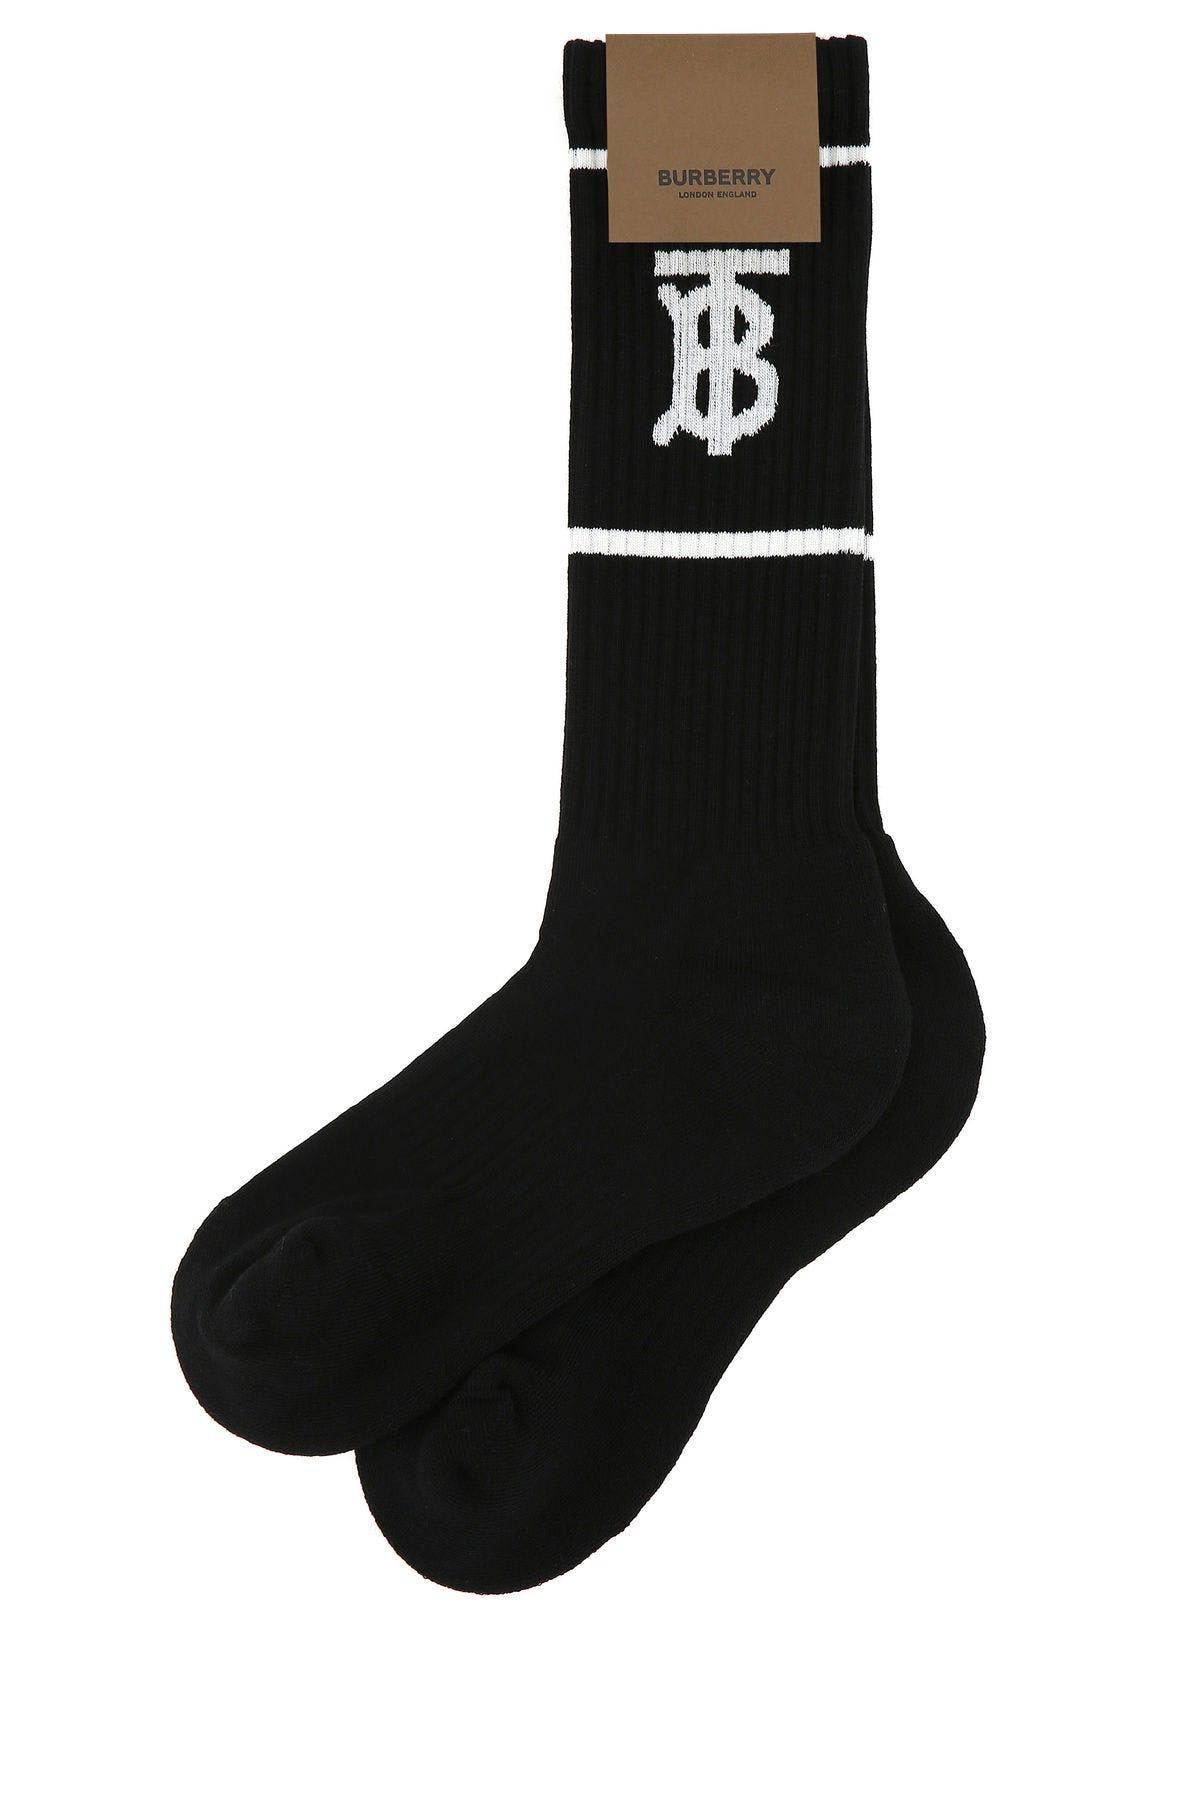 Burberry black polyester blend socks